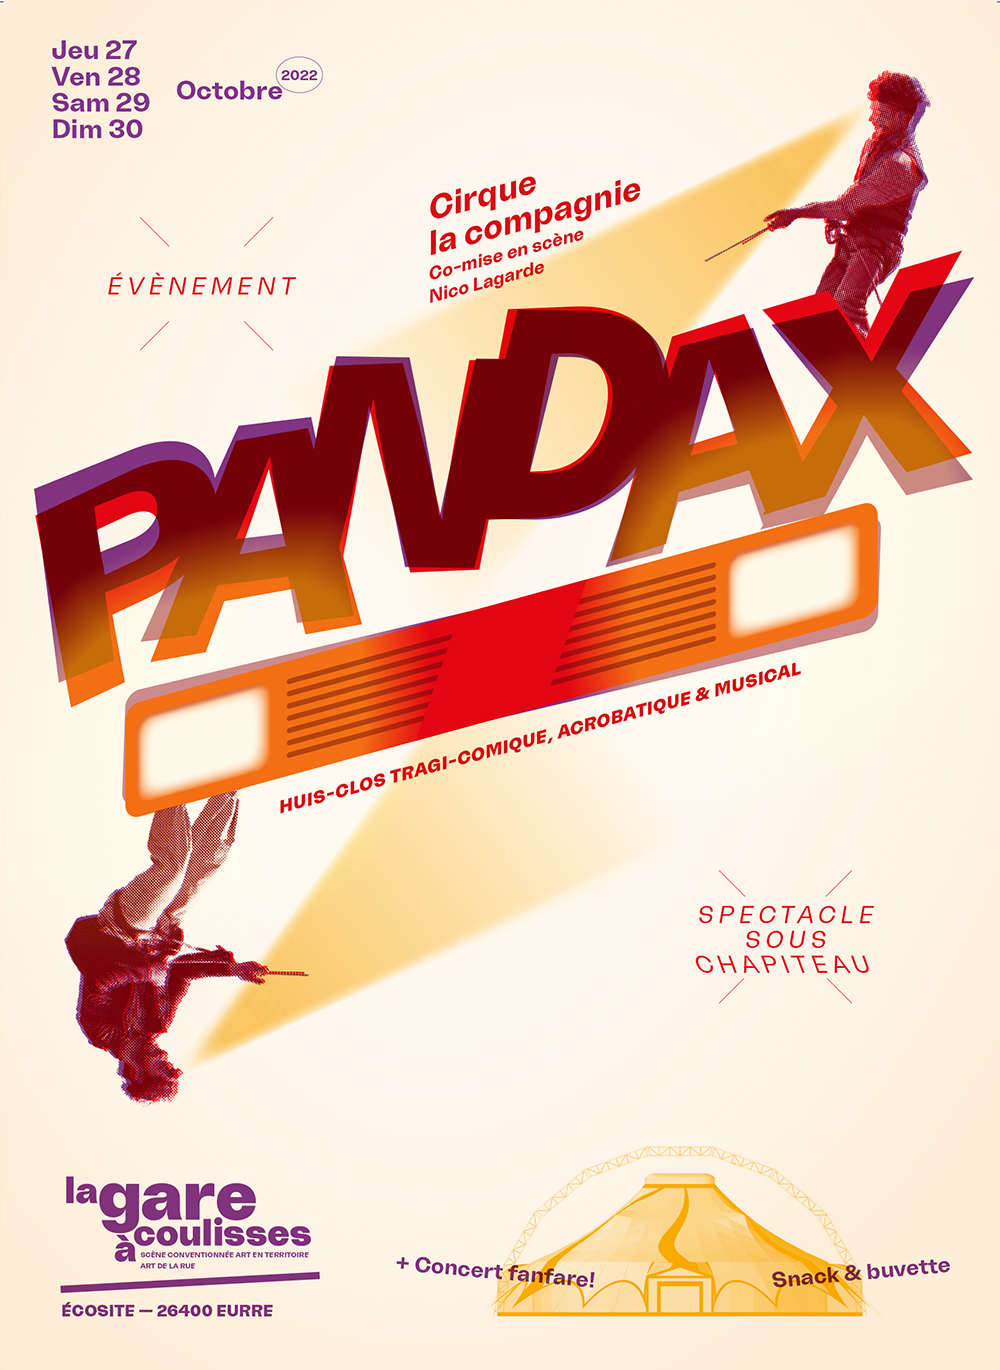 Pandax — Cirque La compagnie